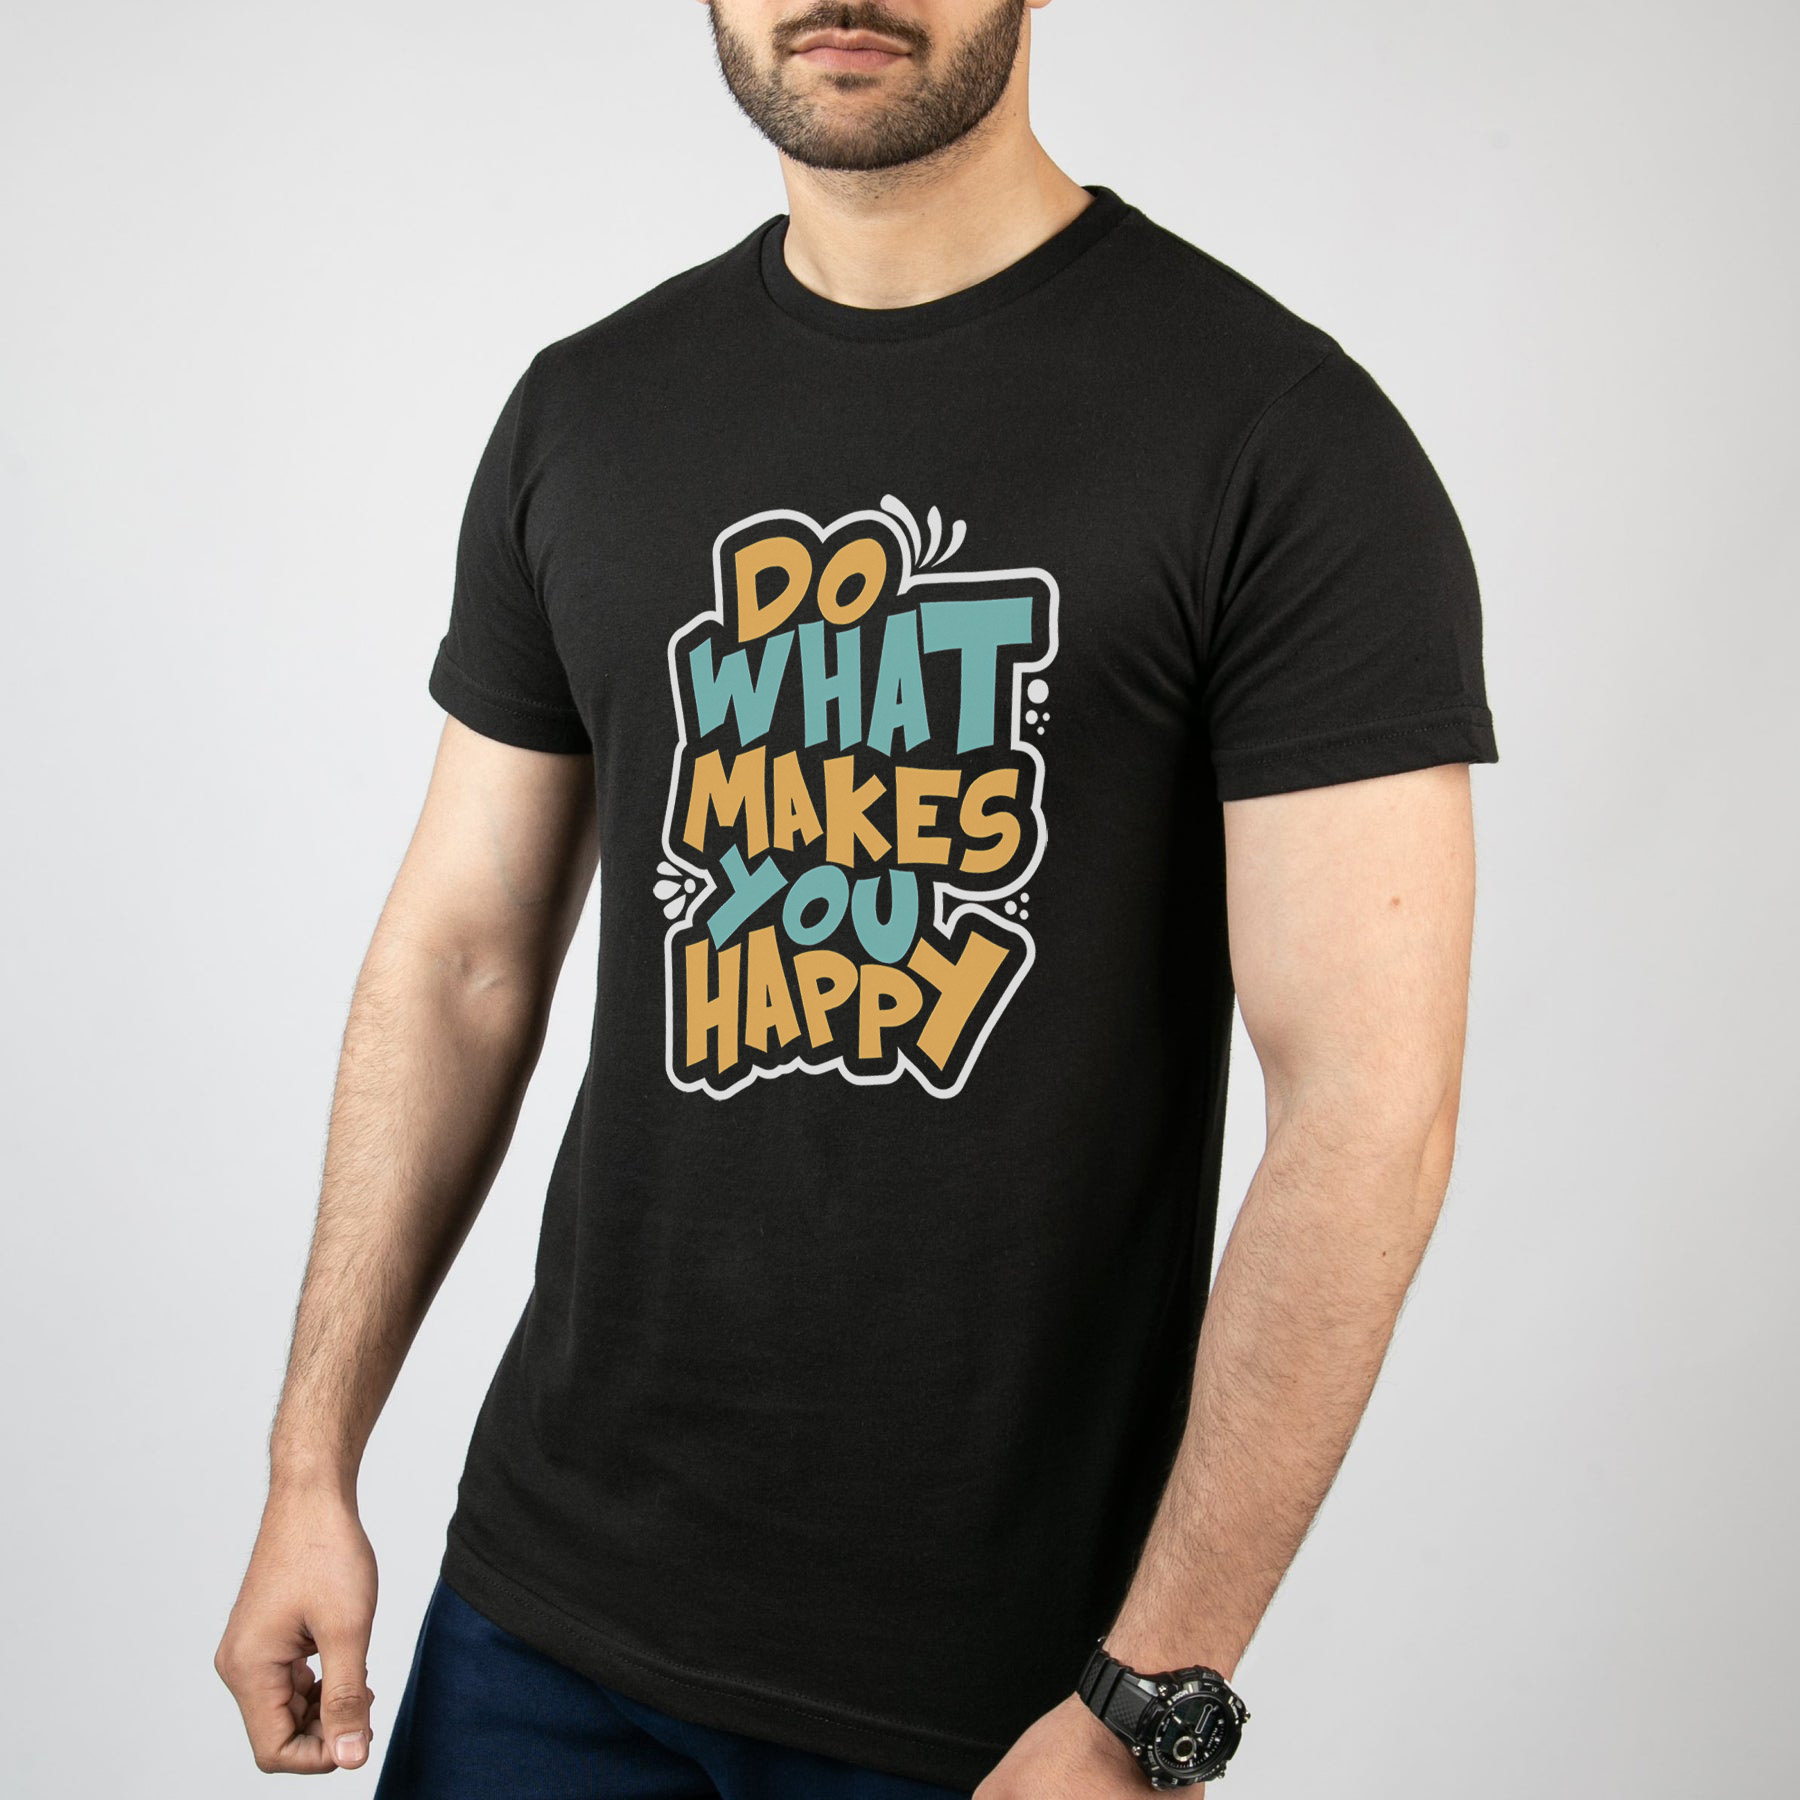 تی شرت آستین کوتاه مردانه مدل نوشته Do what makes you happy کد T006